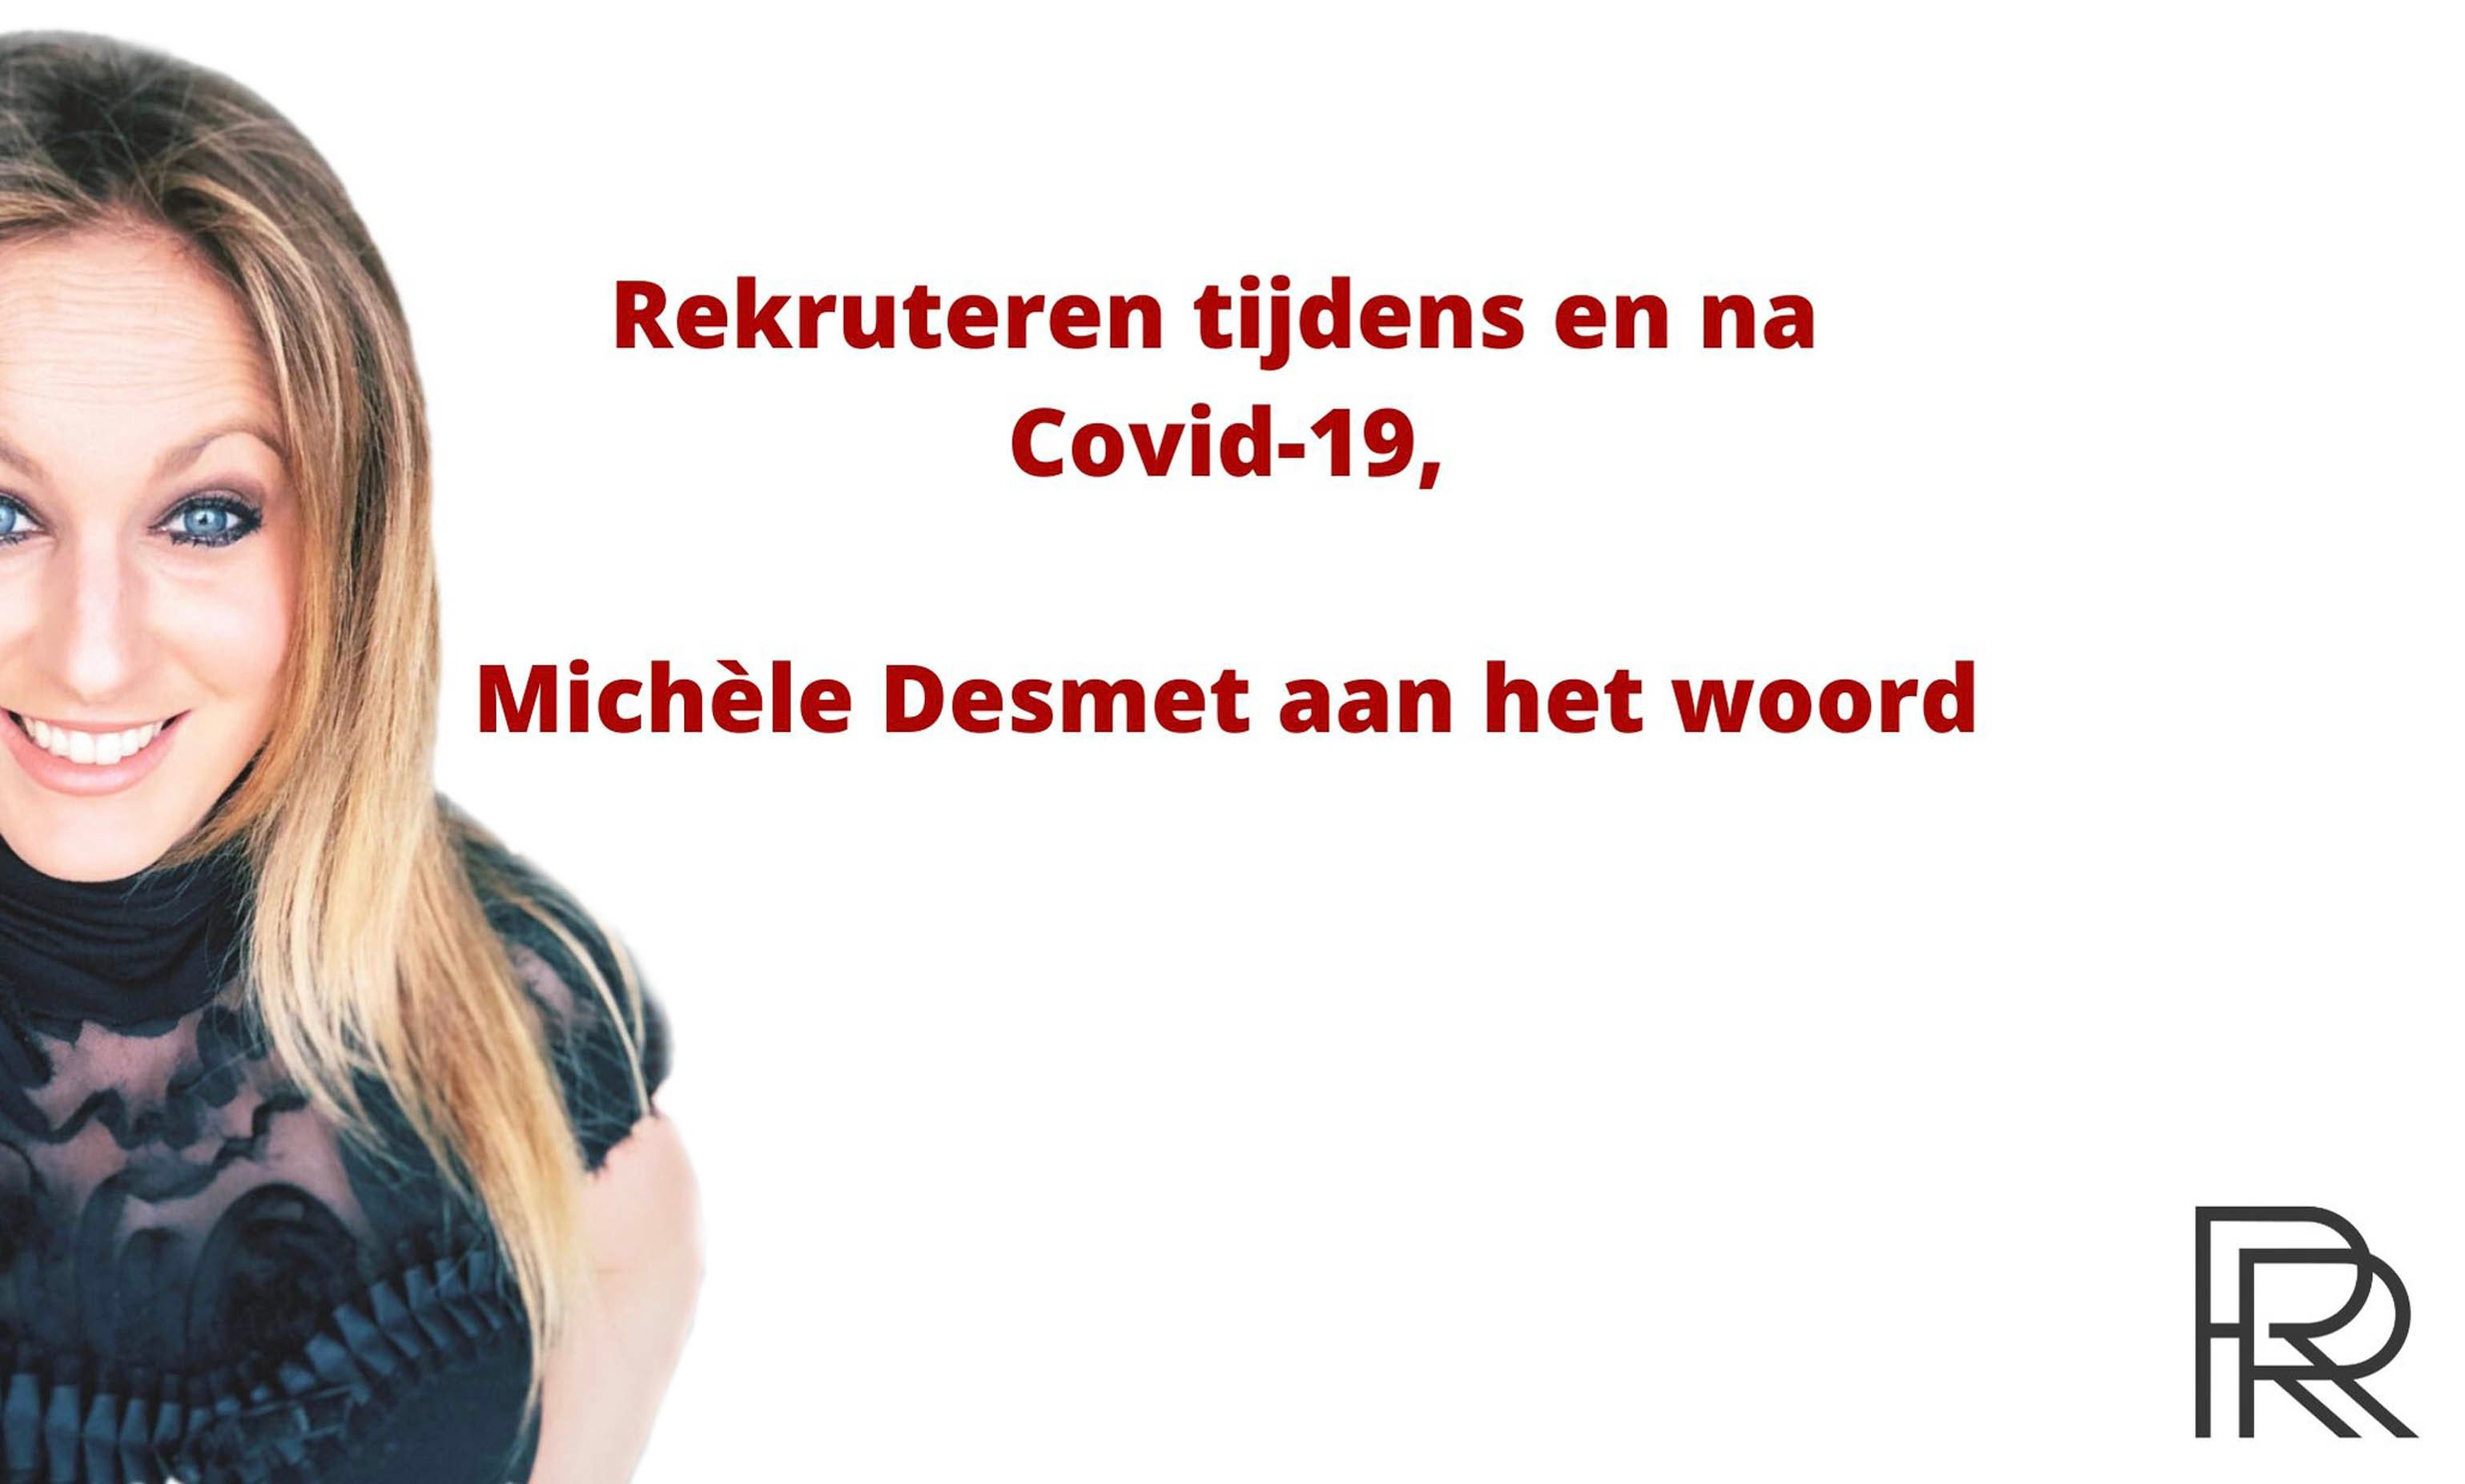 Rekruteren tijdens en na Covid-19, Michèle Desmet aan het woord